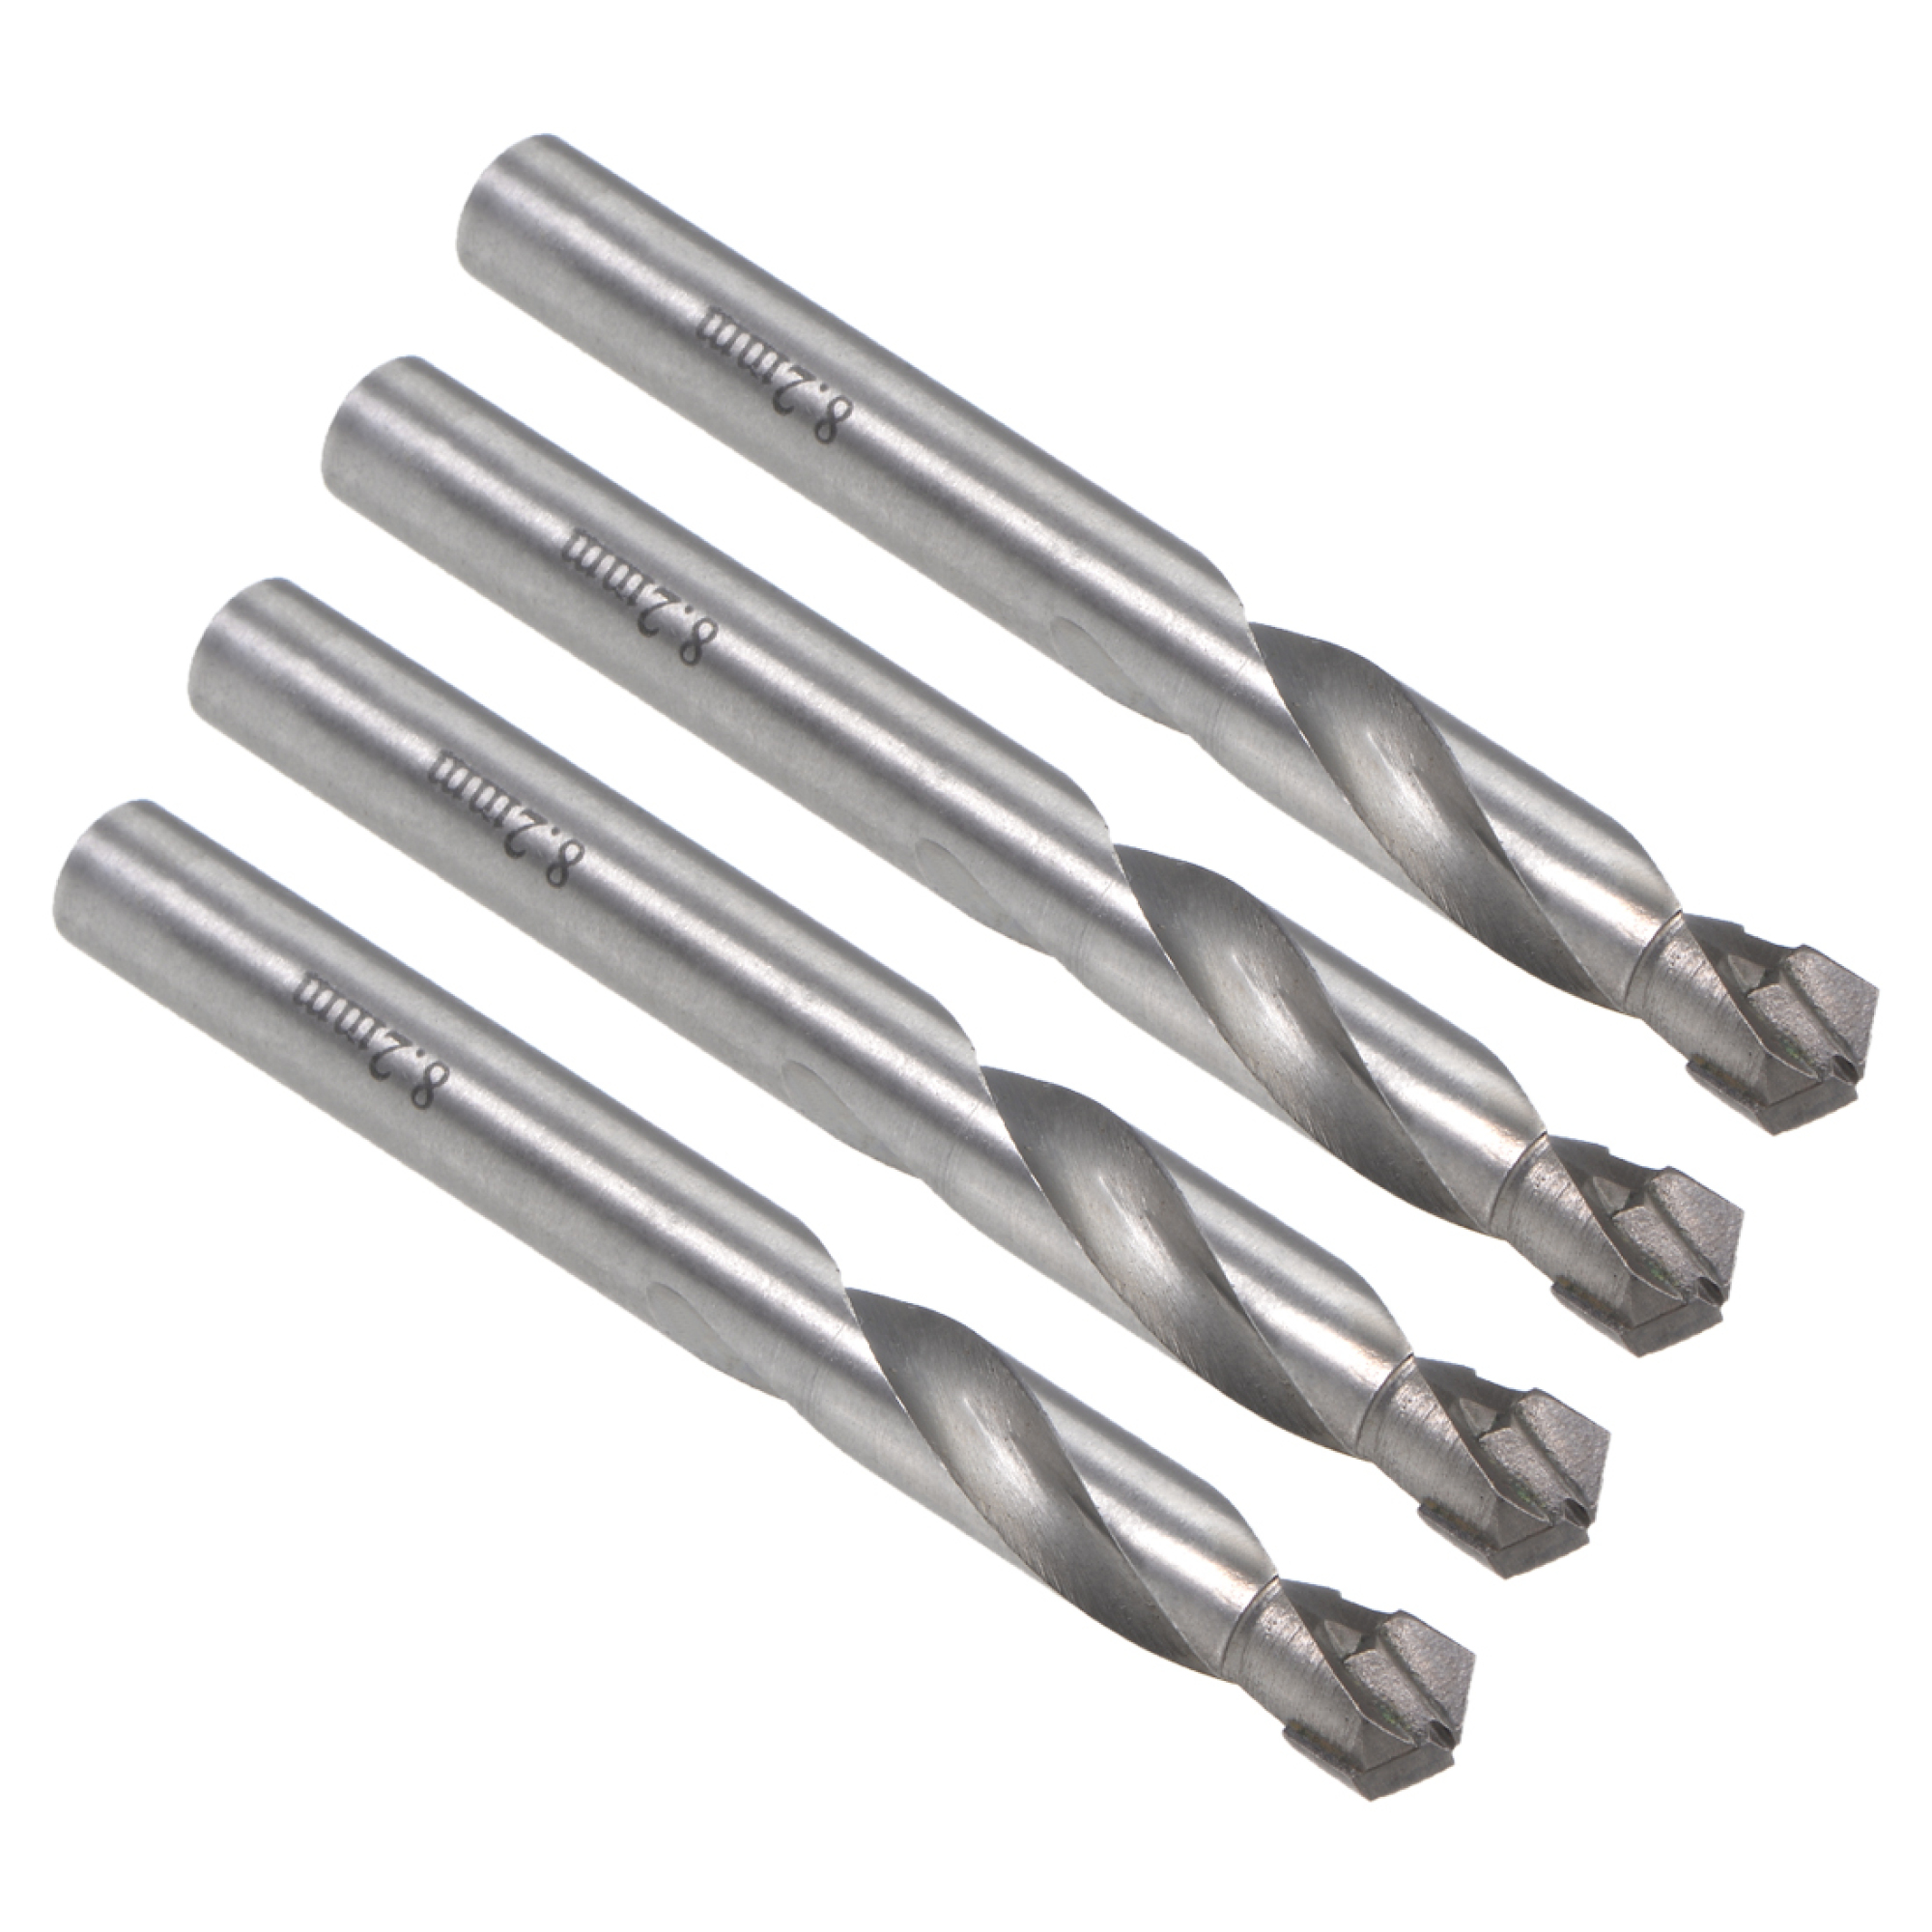 Carbide Twist Drill Bits for Metals - 4 Pcs